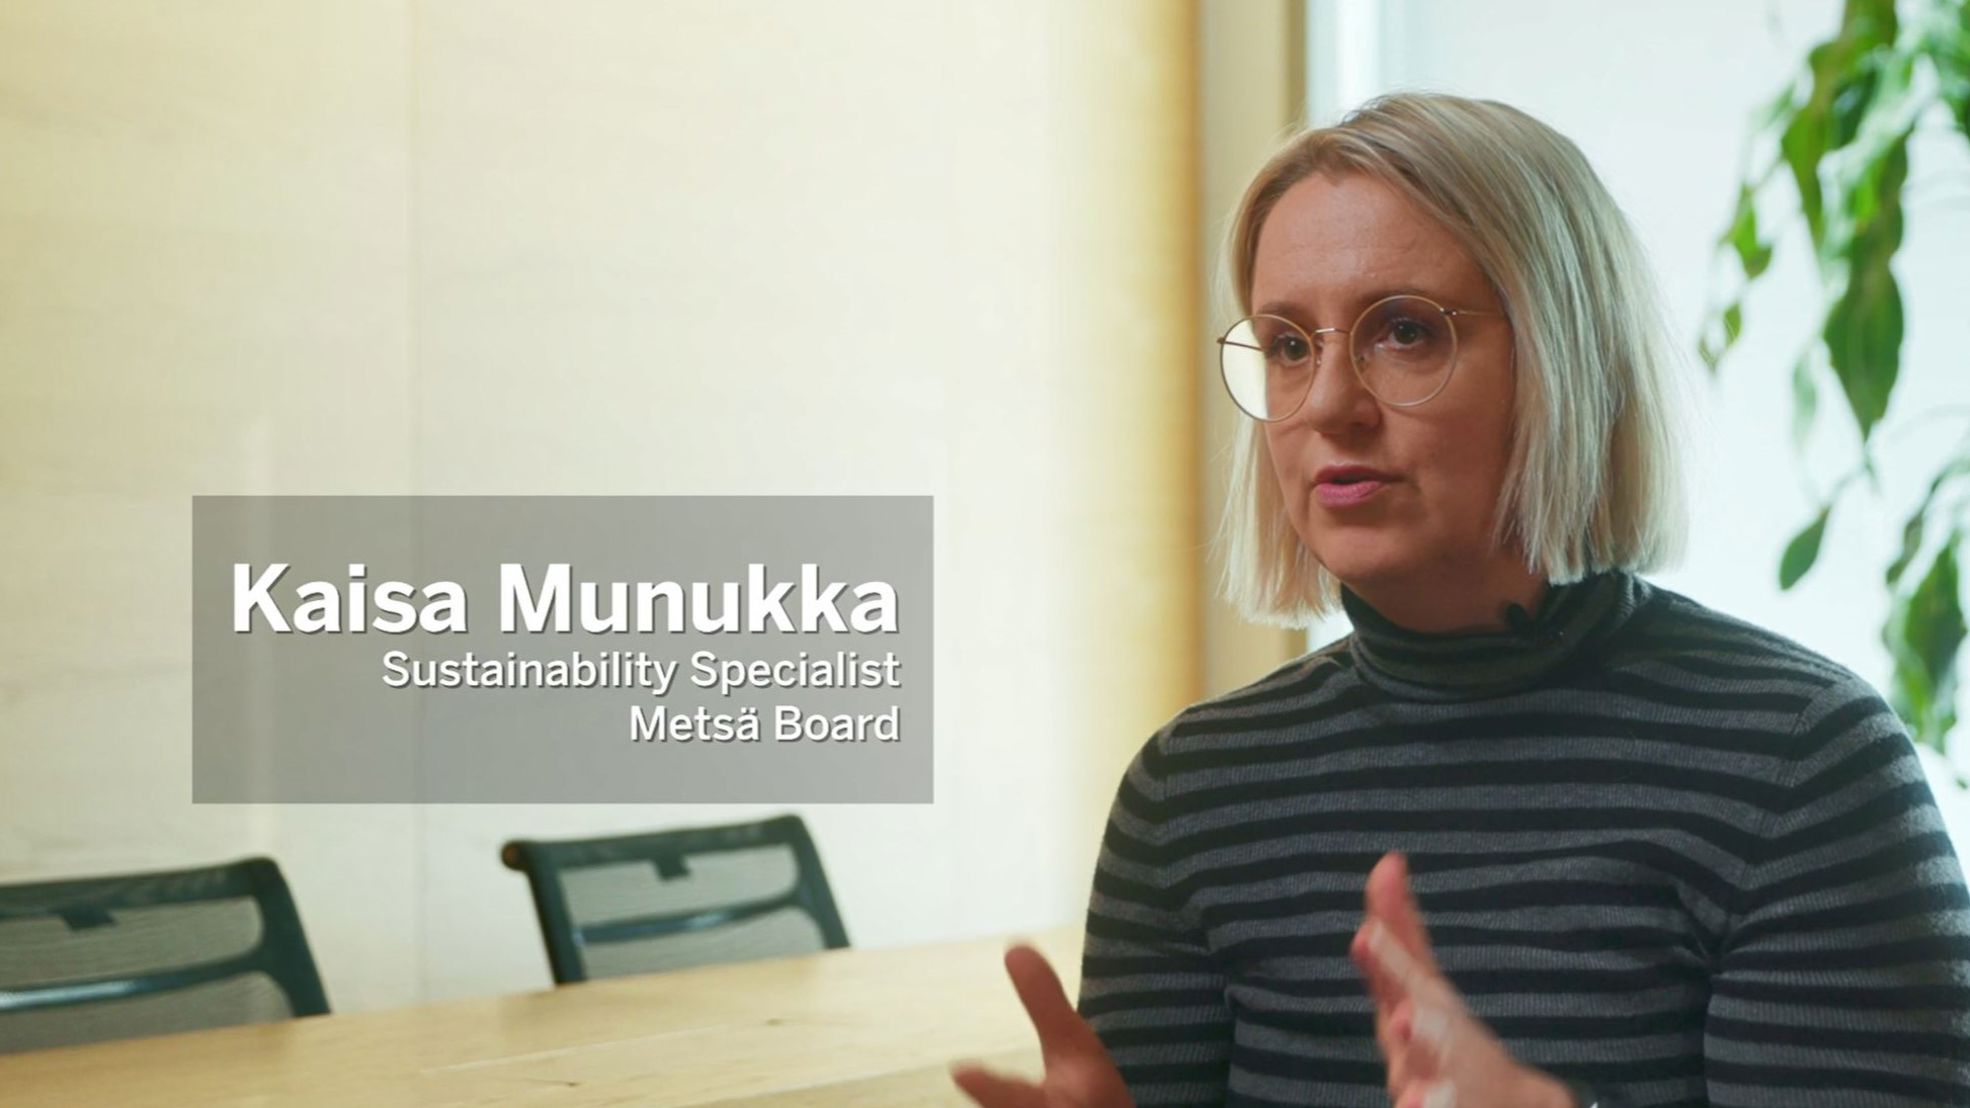 Kaisa Munukka, Sustainability Specialist at Metsä Board